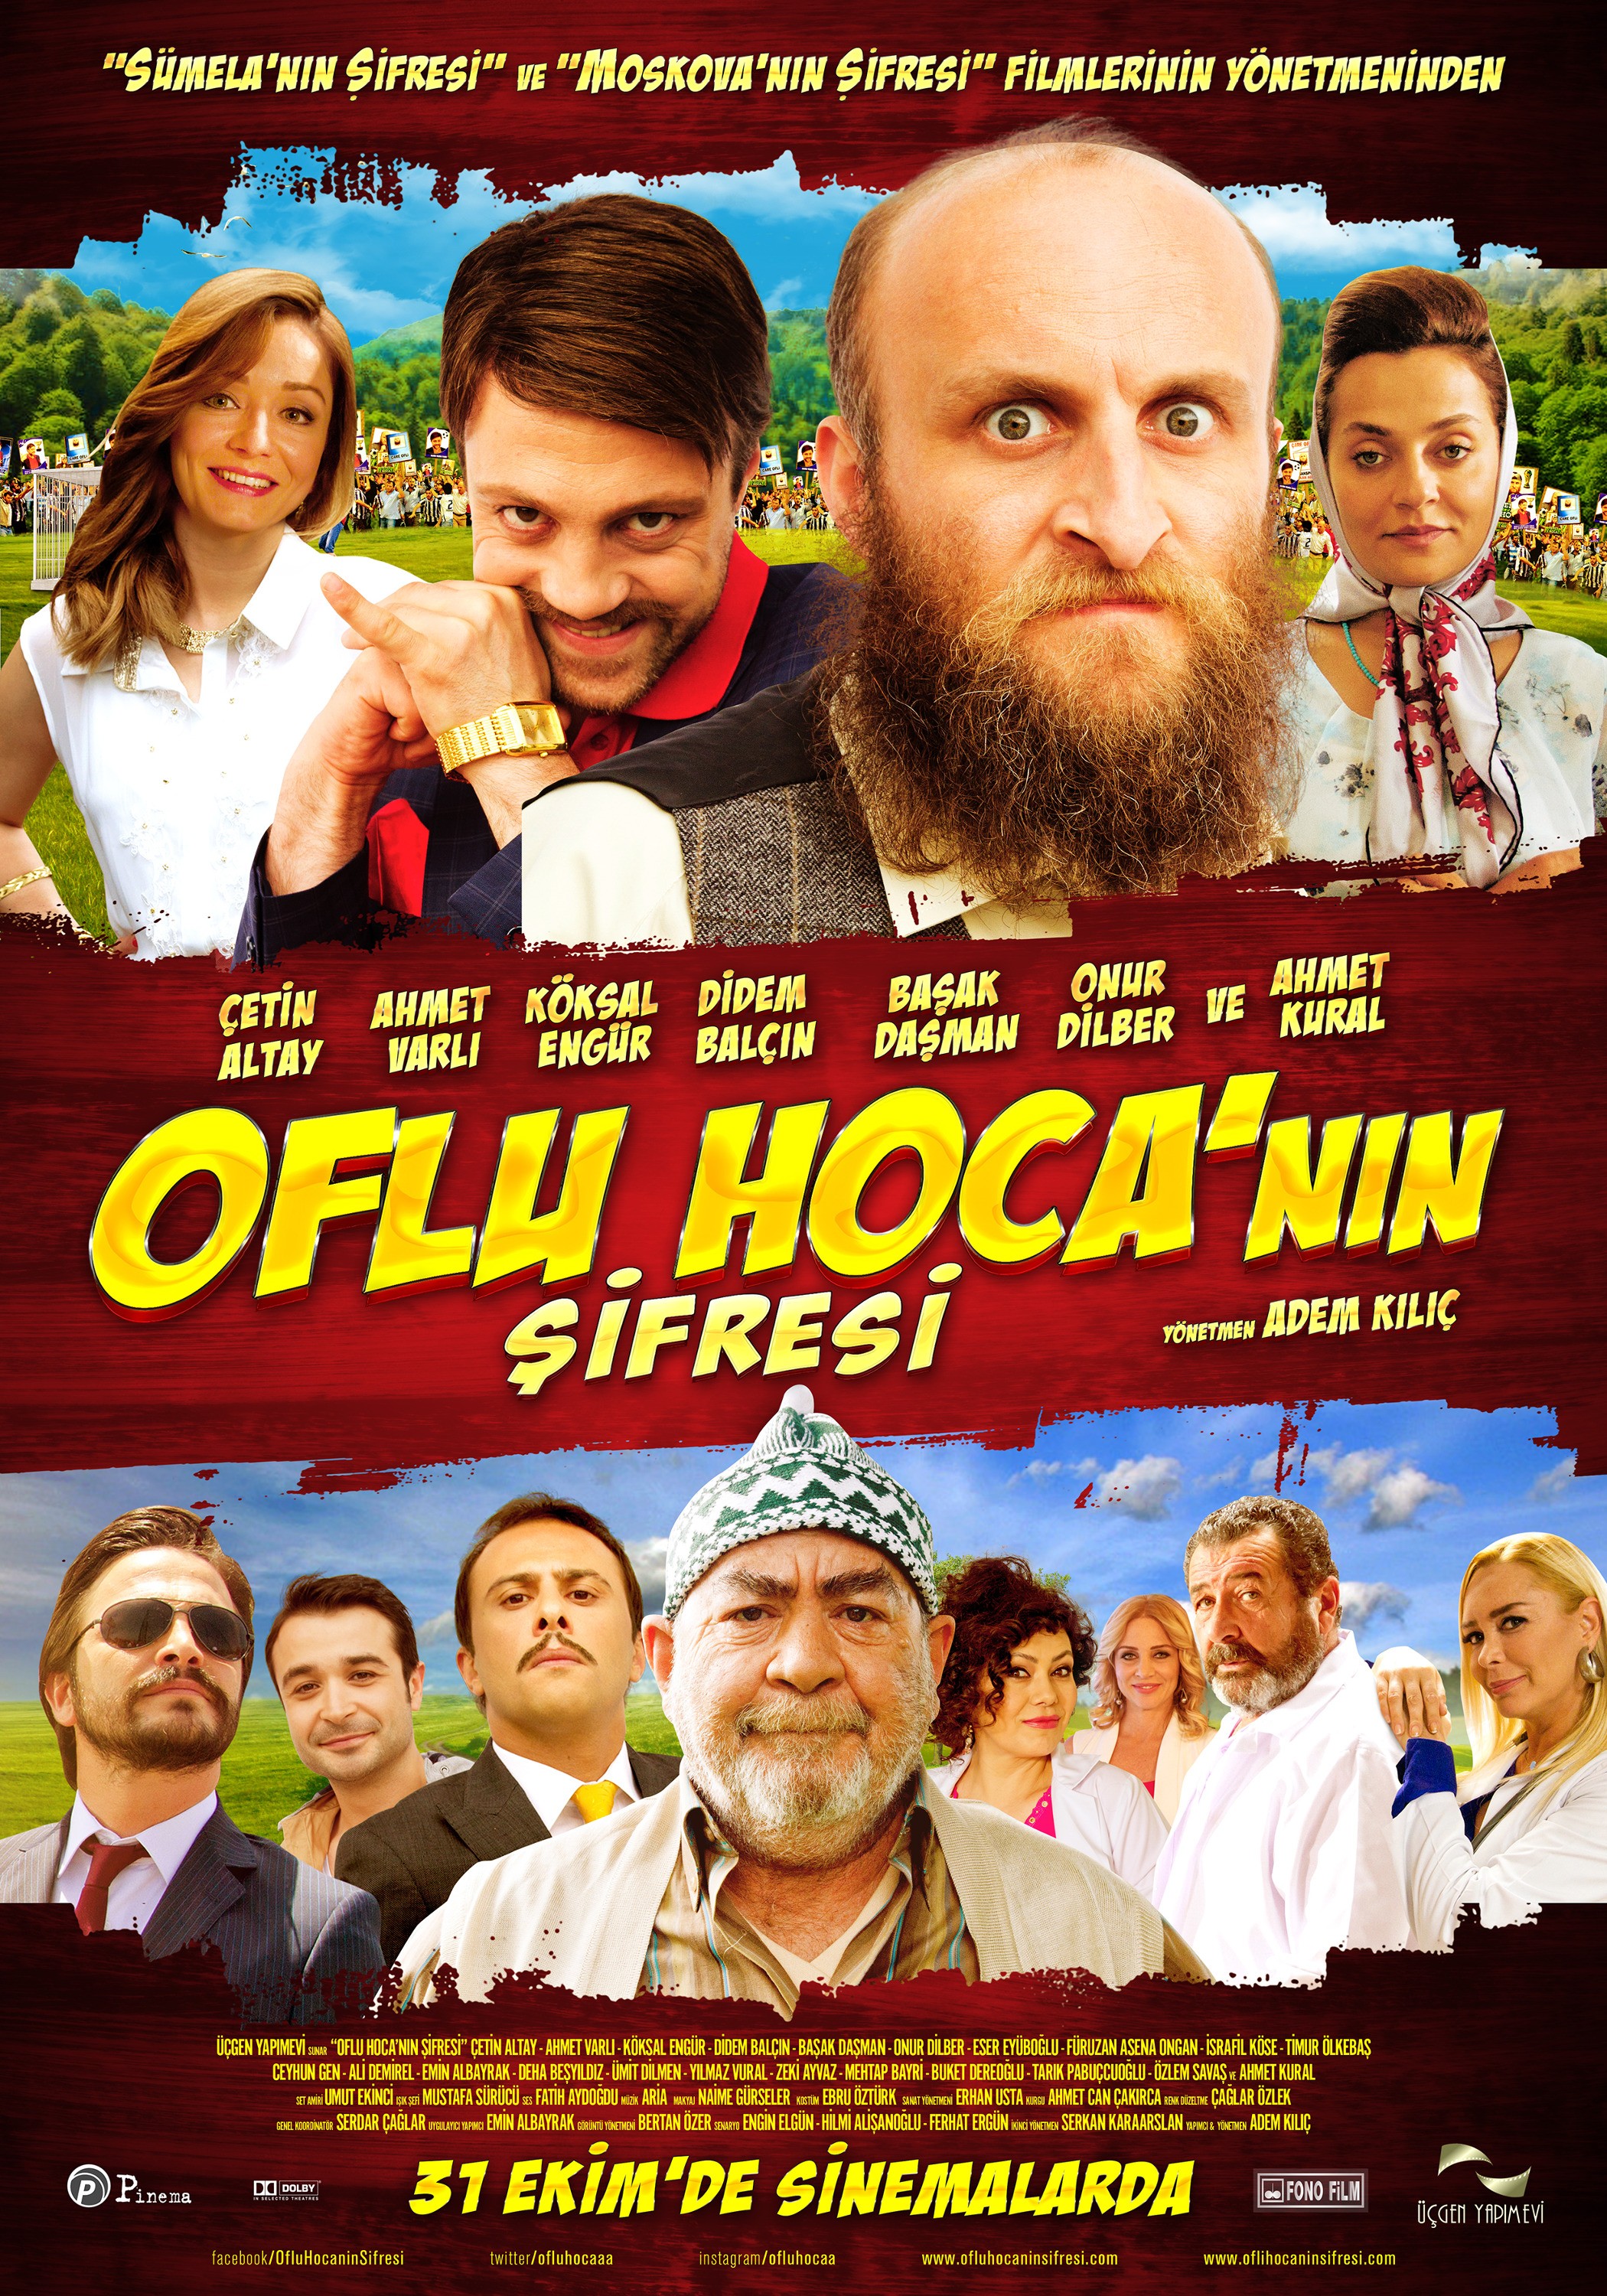 Mega Sized Movie Poster Image for Oflu Hoca'nin Sifresi 